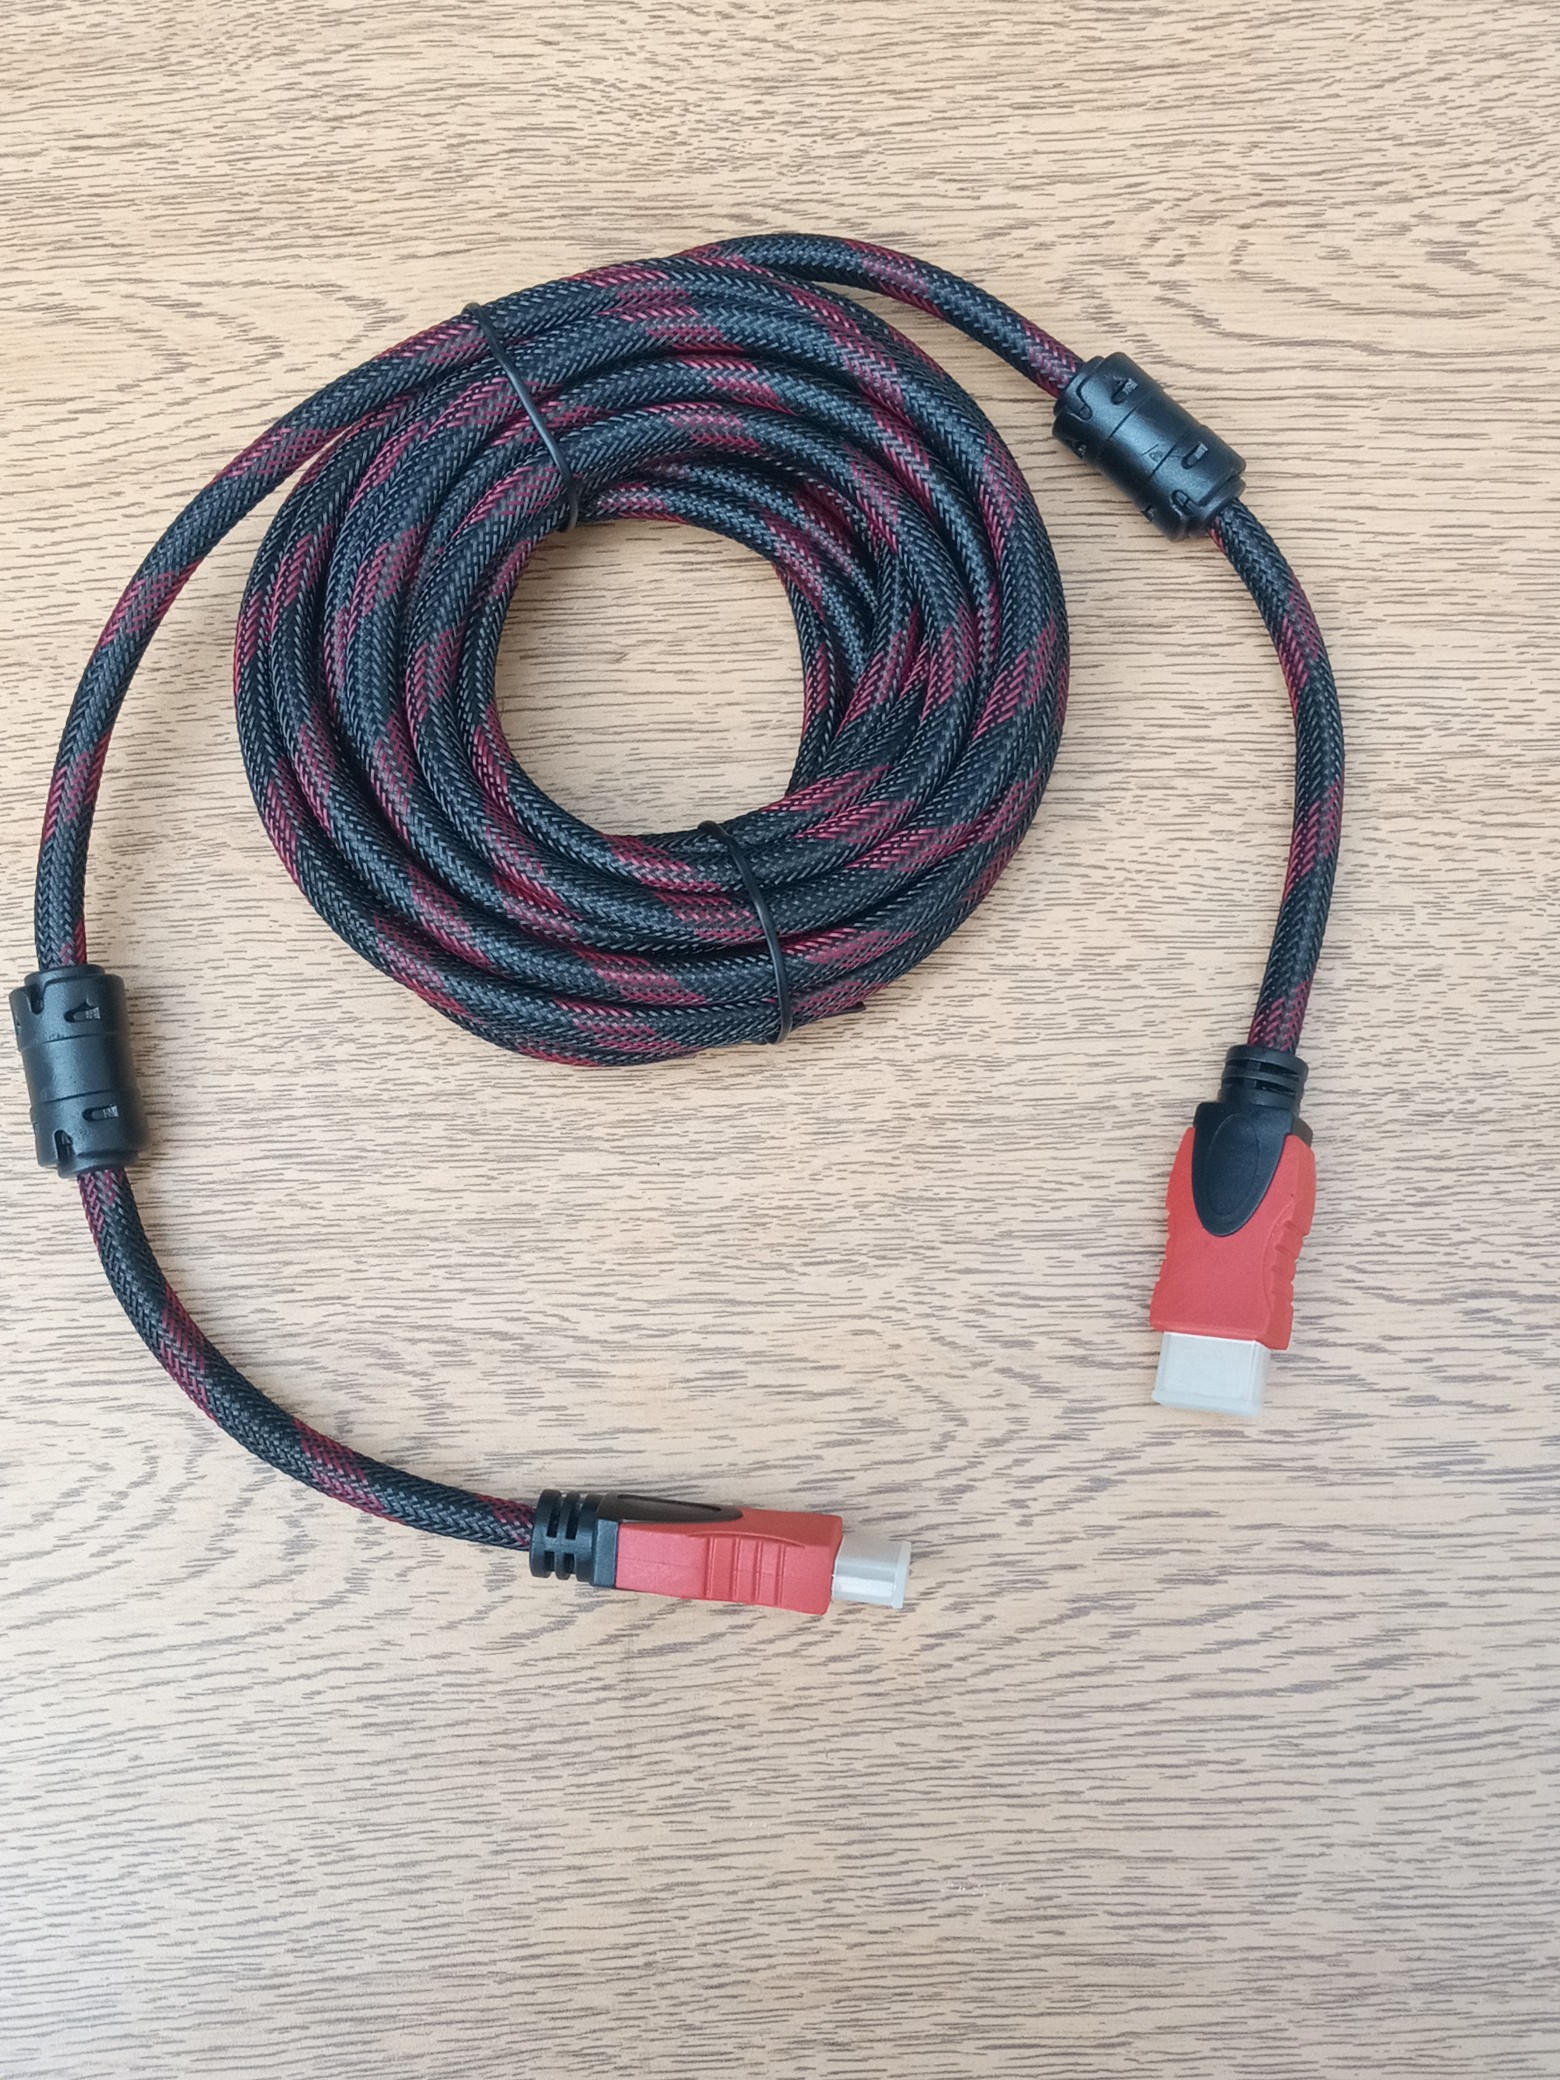 accesorios para electronica - Cable HDMI De 5 Metro 0